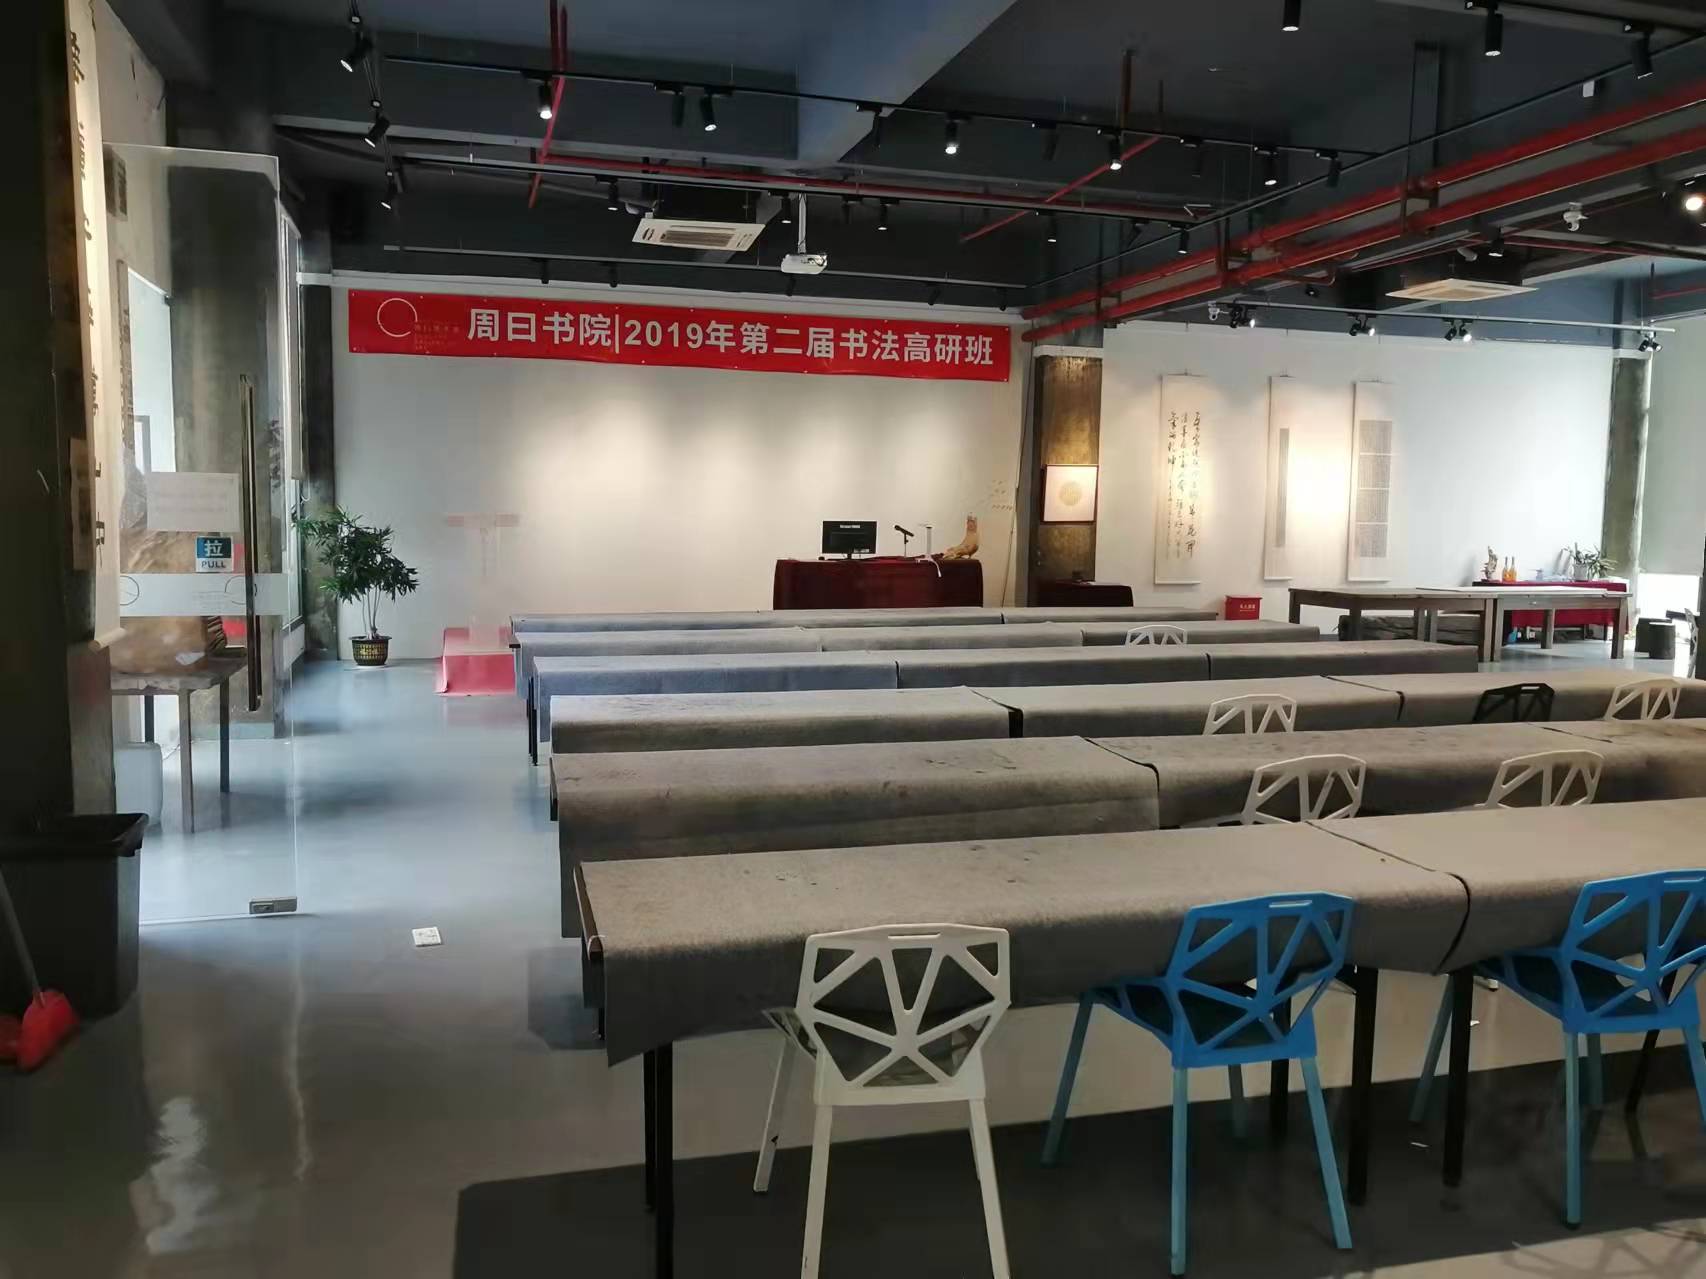 西丽塘朗新出70平小面积面积办公室出租拎包入住。